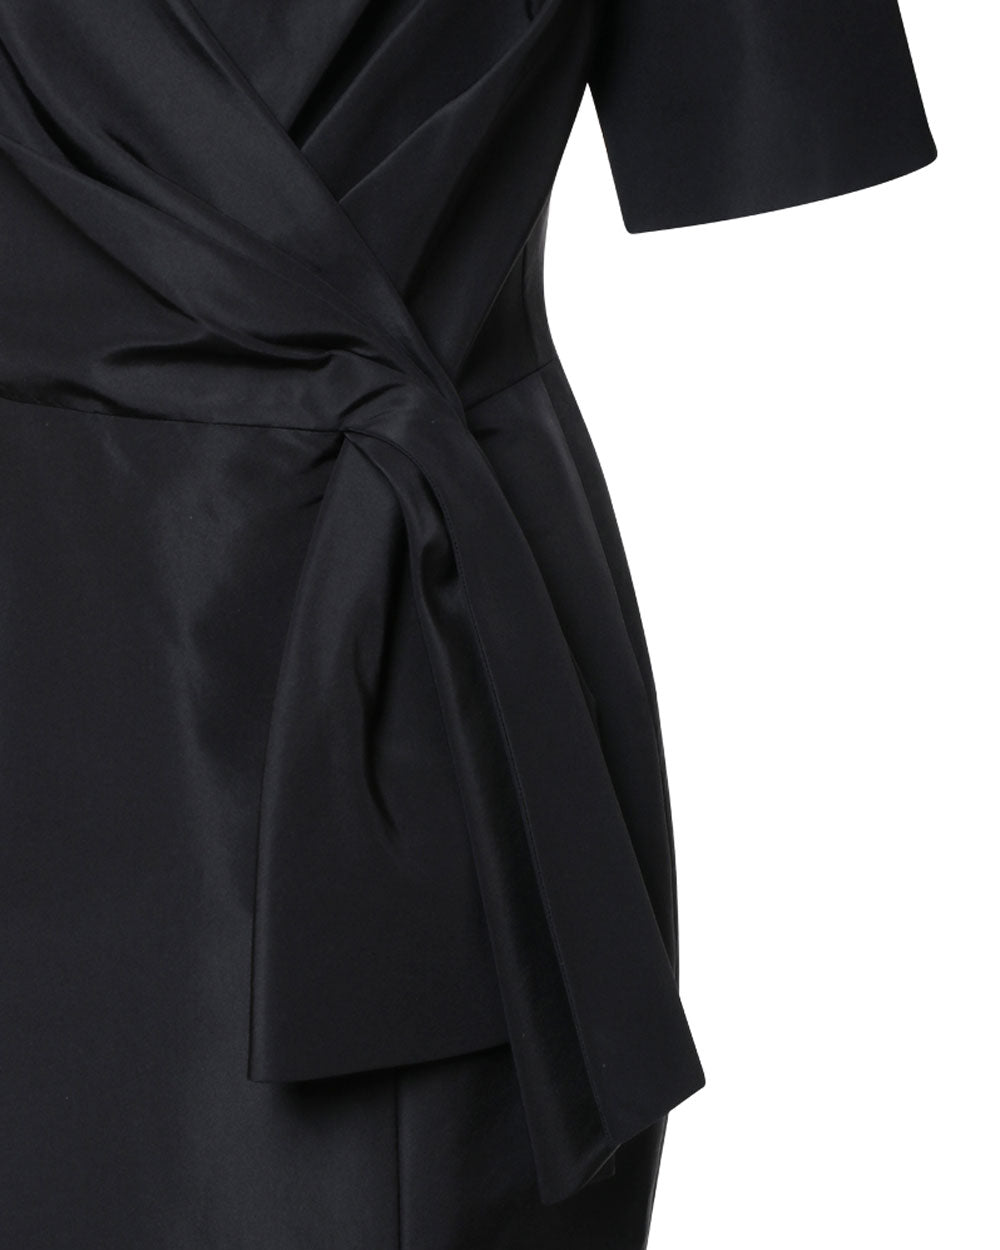 Short Sleeve Mermaid Gown in Black Silk